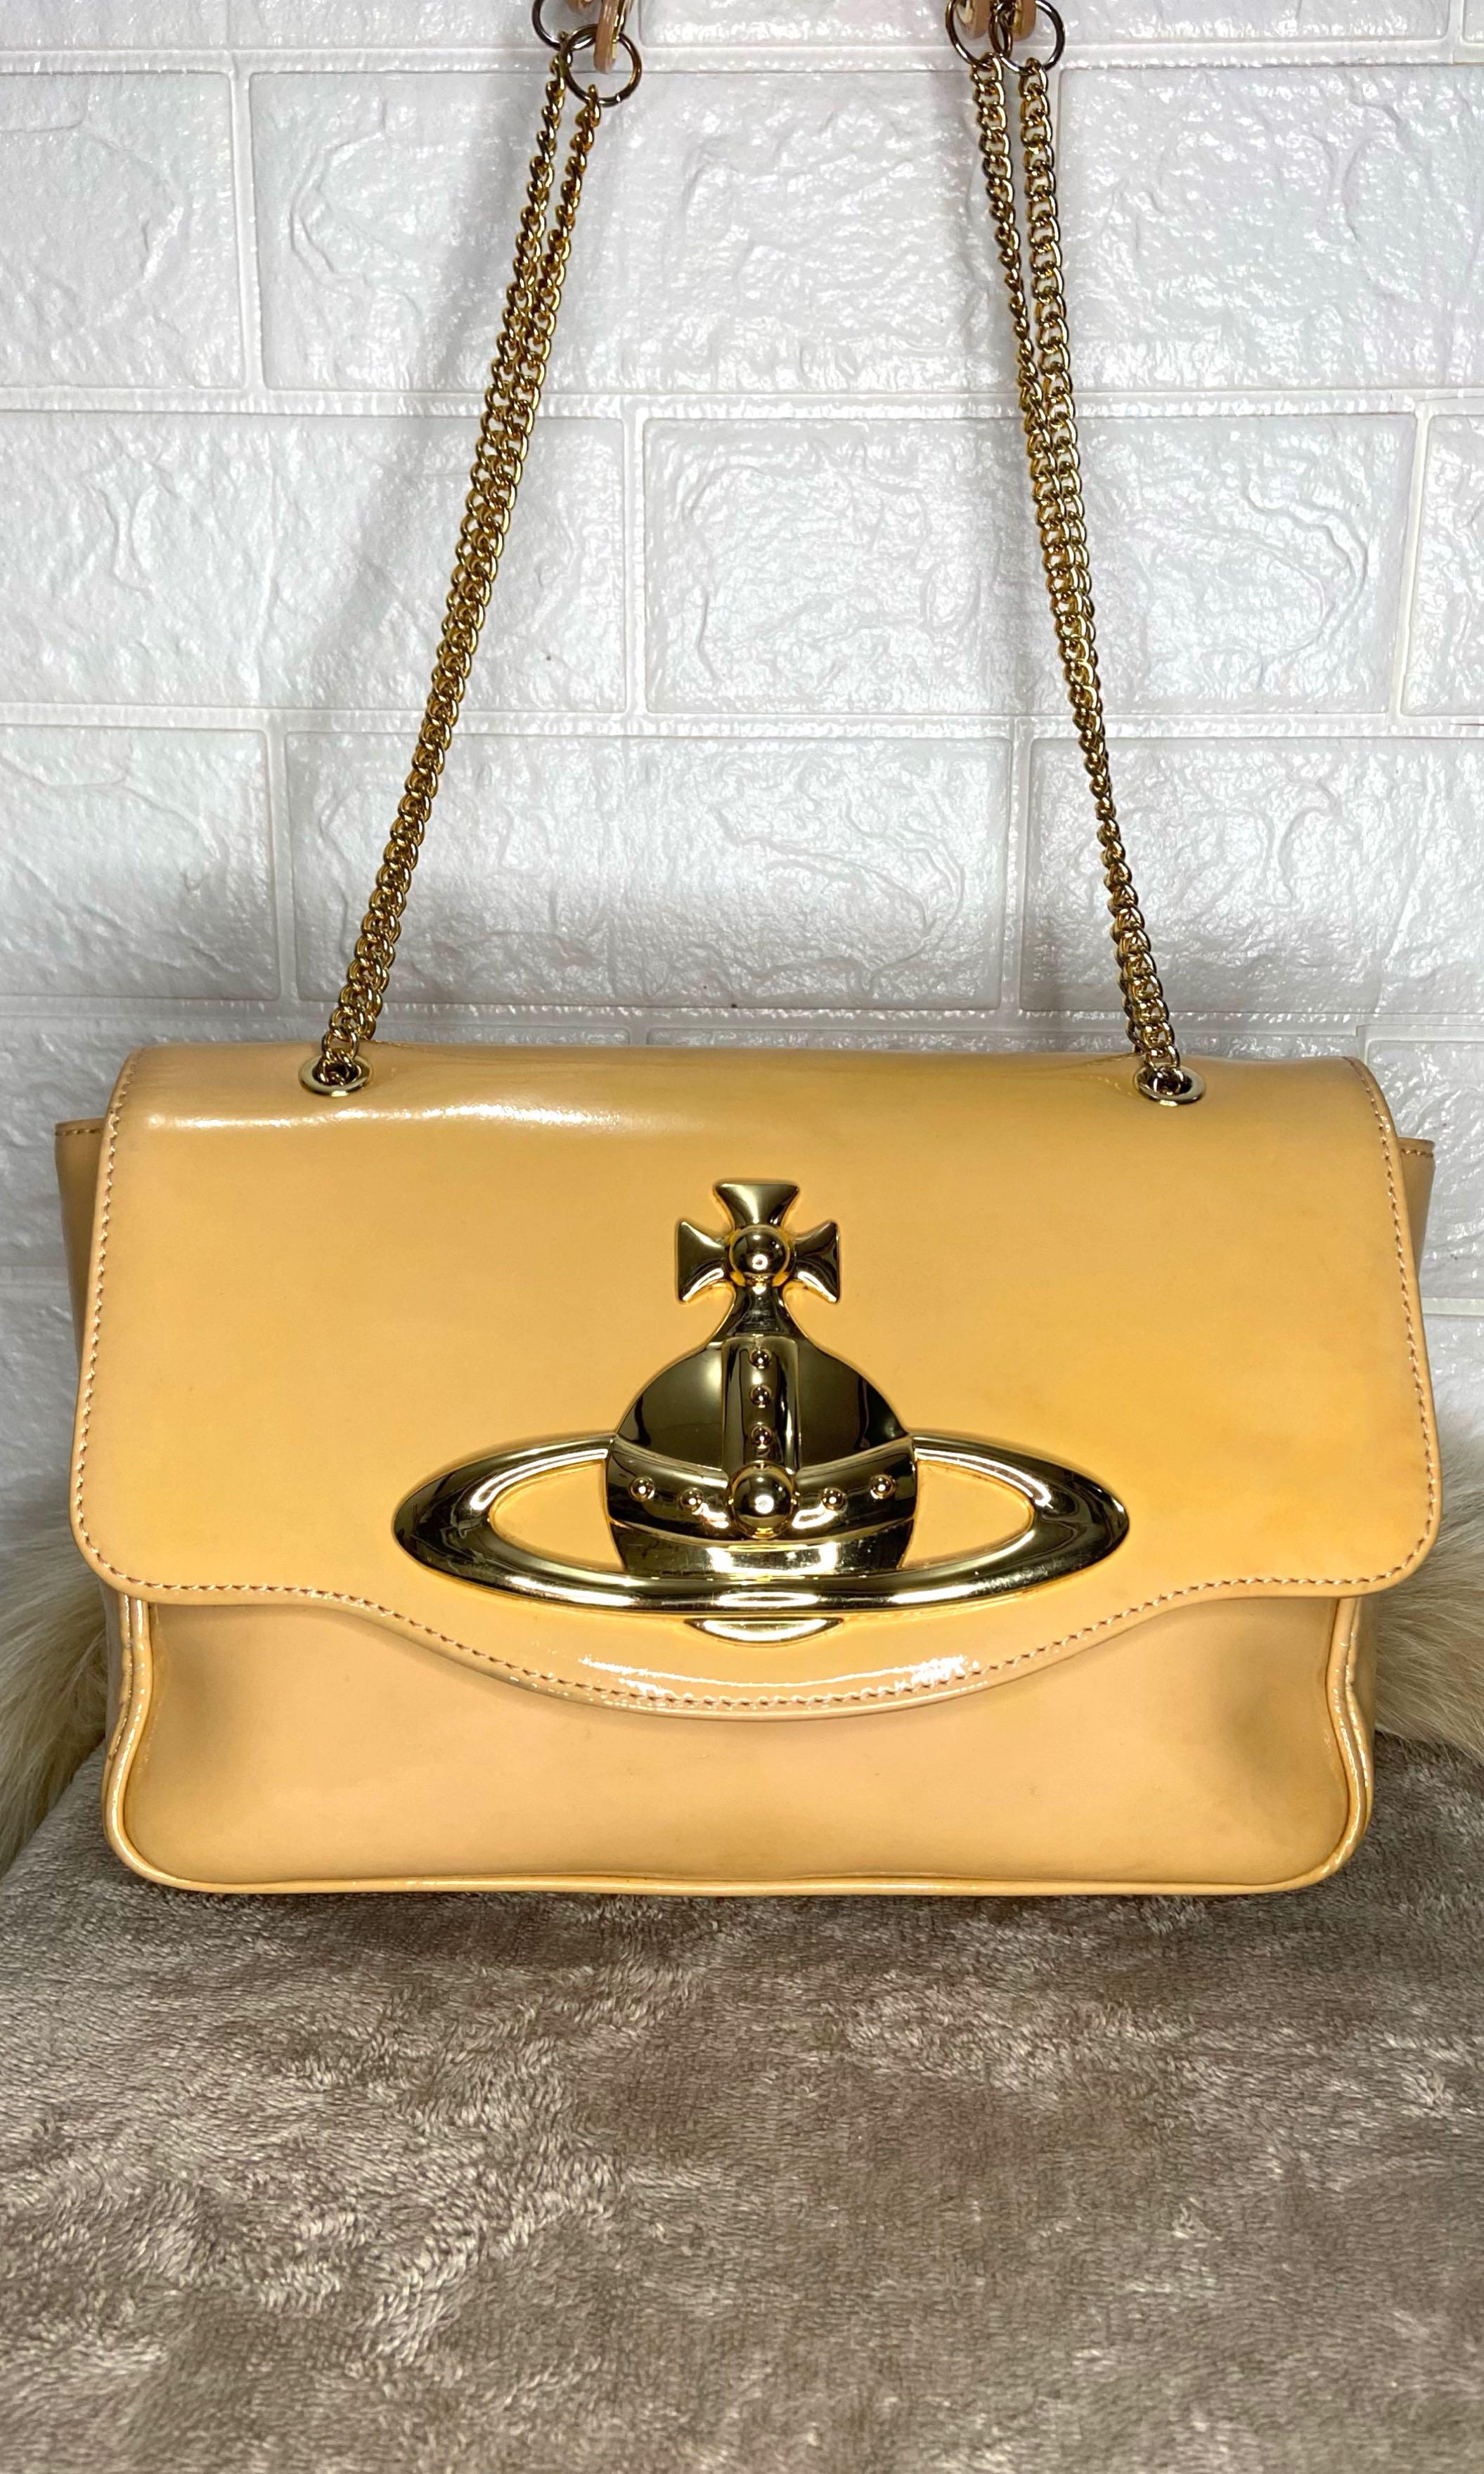 Vintage Vivienne Westwood Gold Heart Bag – Treasures of NYC